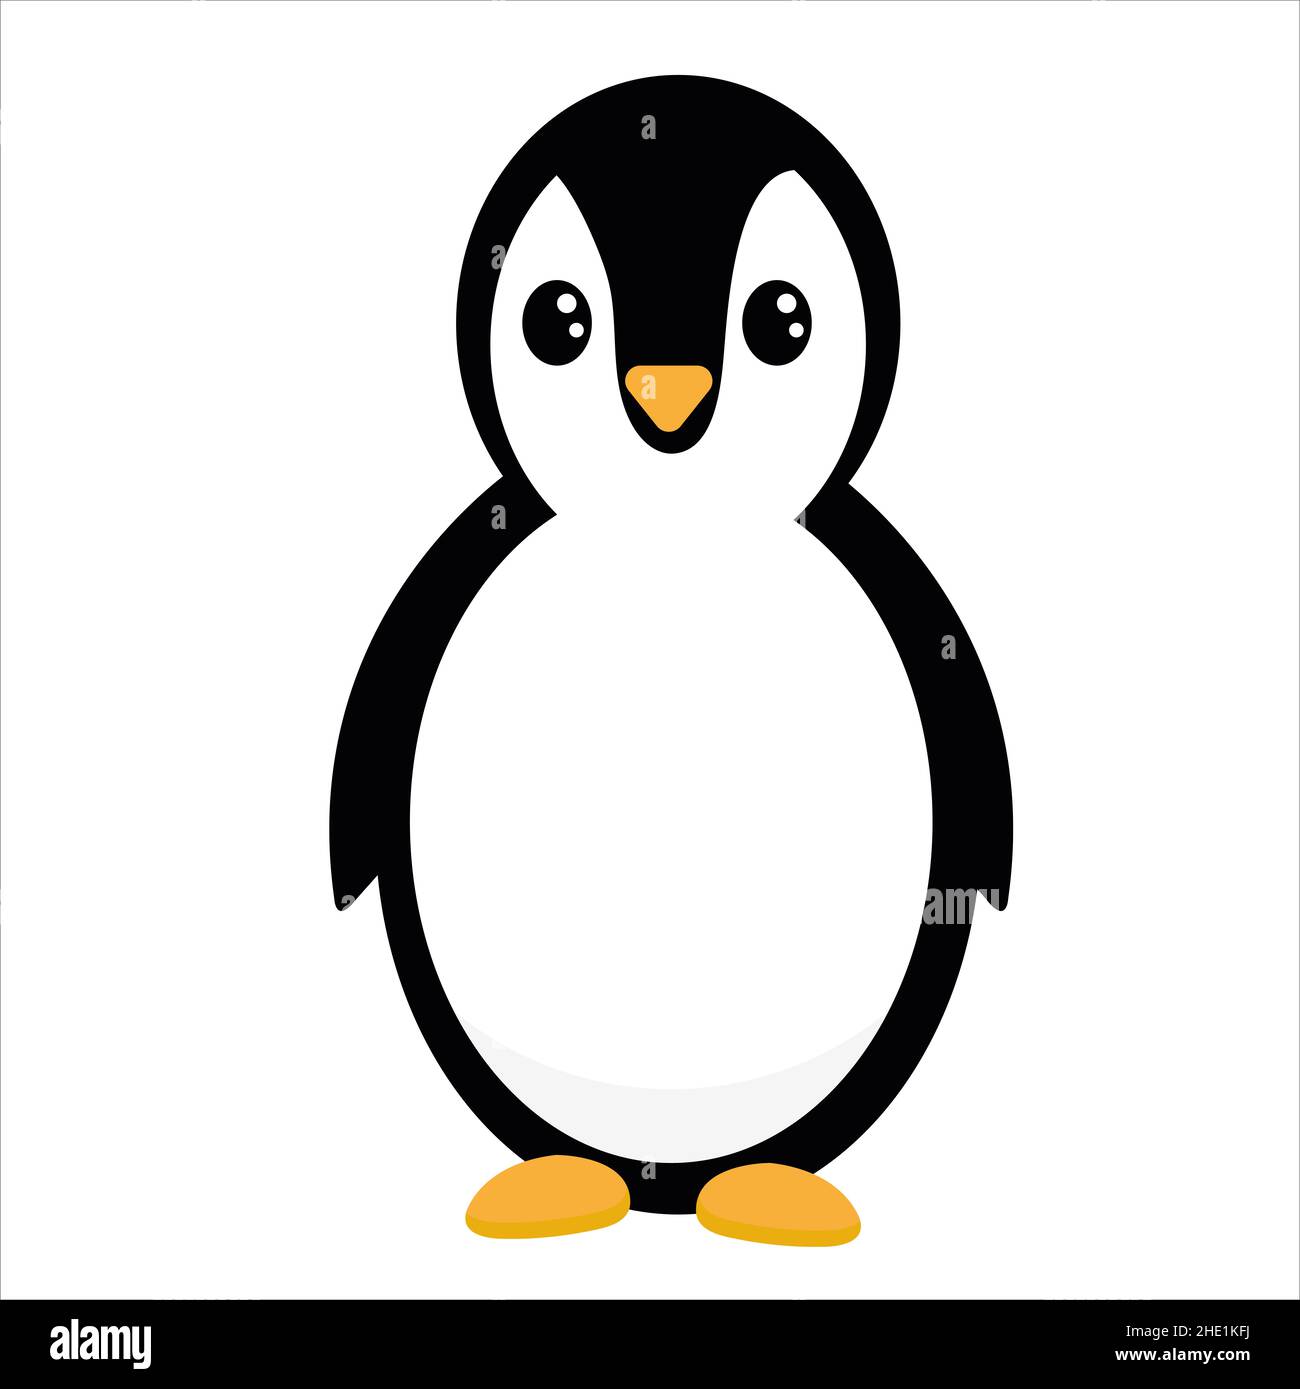 Imagen de dibujos animados de pingüino fotografías e imágenes de alta  resolución - Página 2 - Alamy